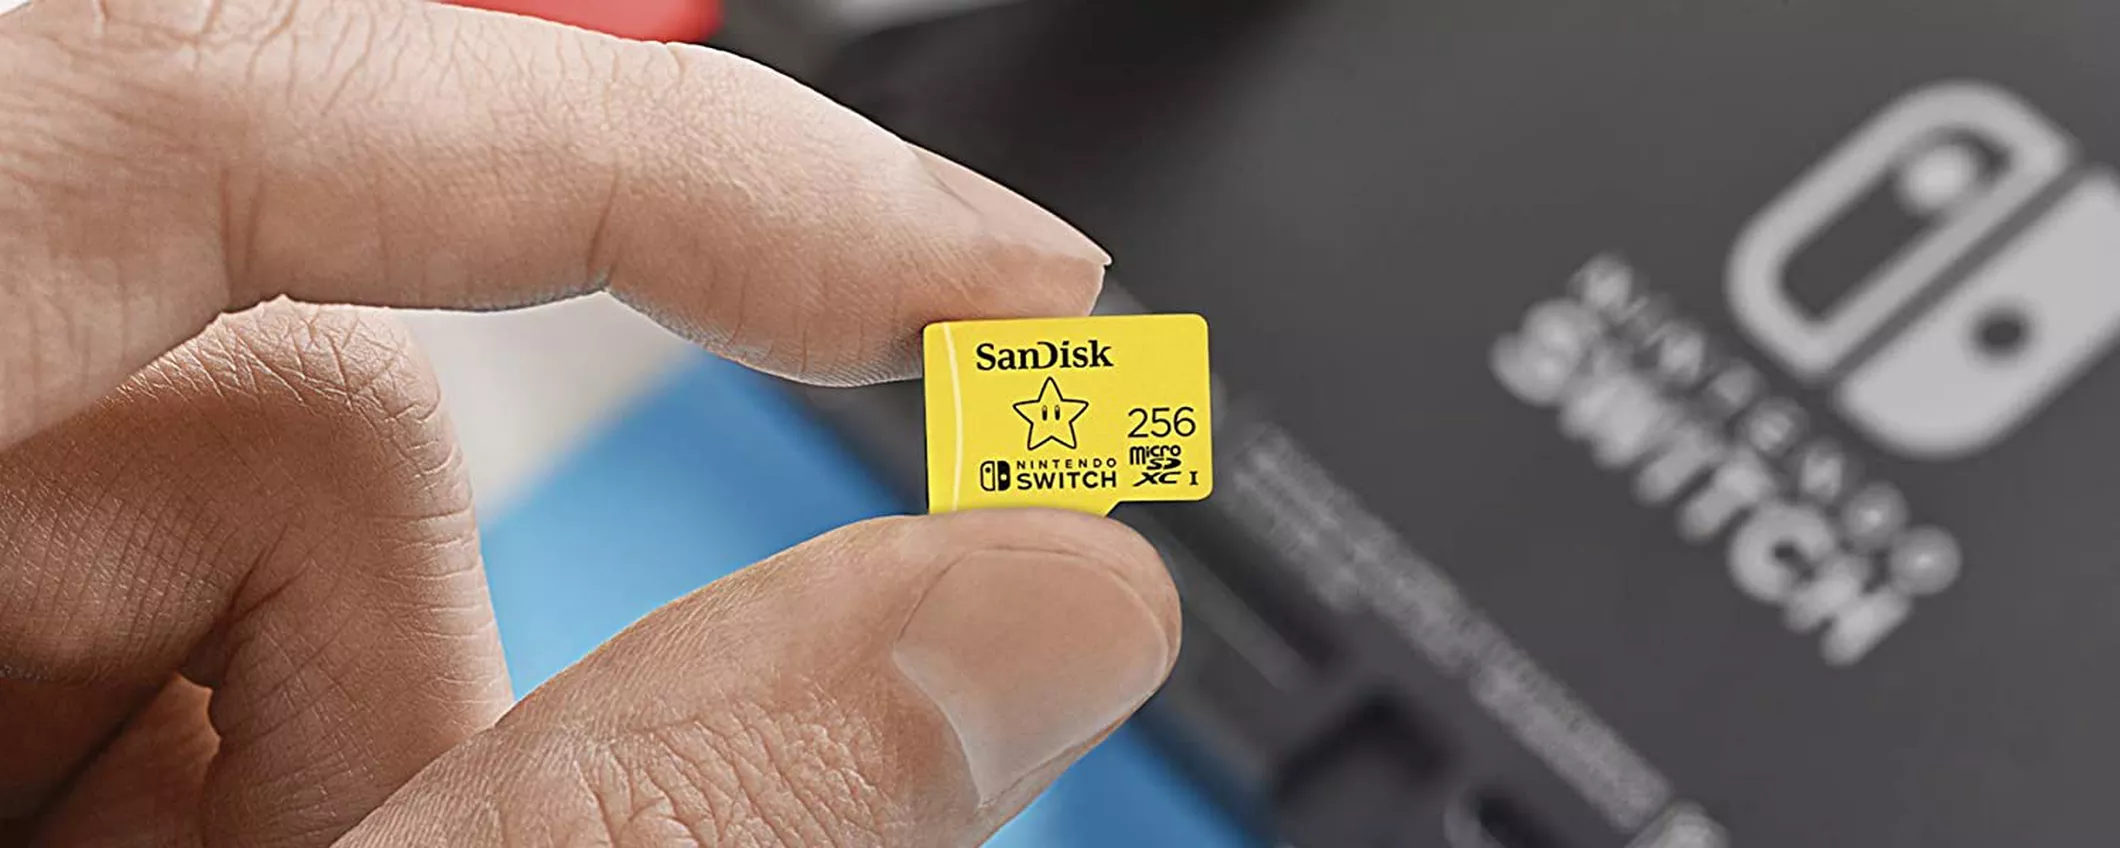 MicroSD SanDisk per Nintendo Switch (256GB): il prezzo scende ancora (35€)